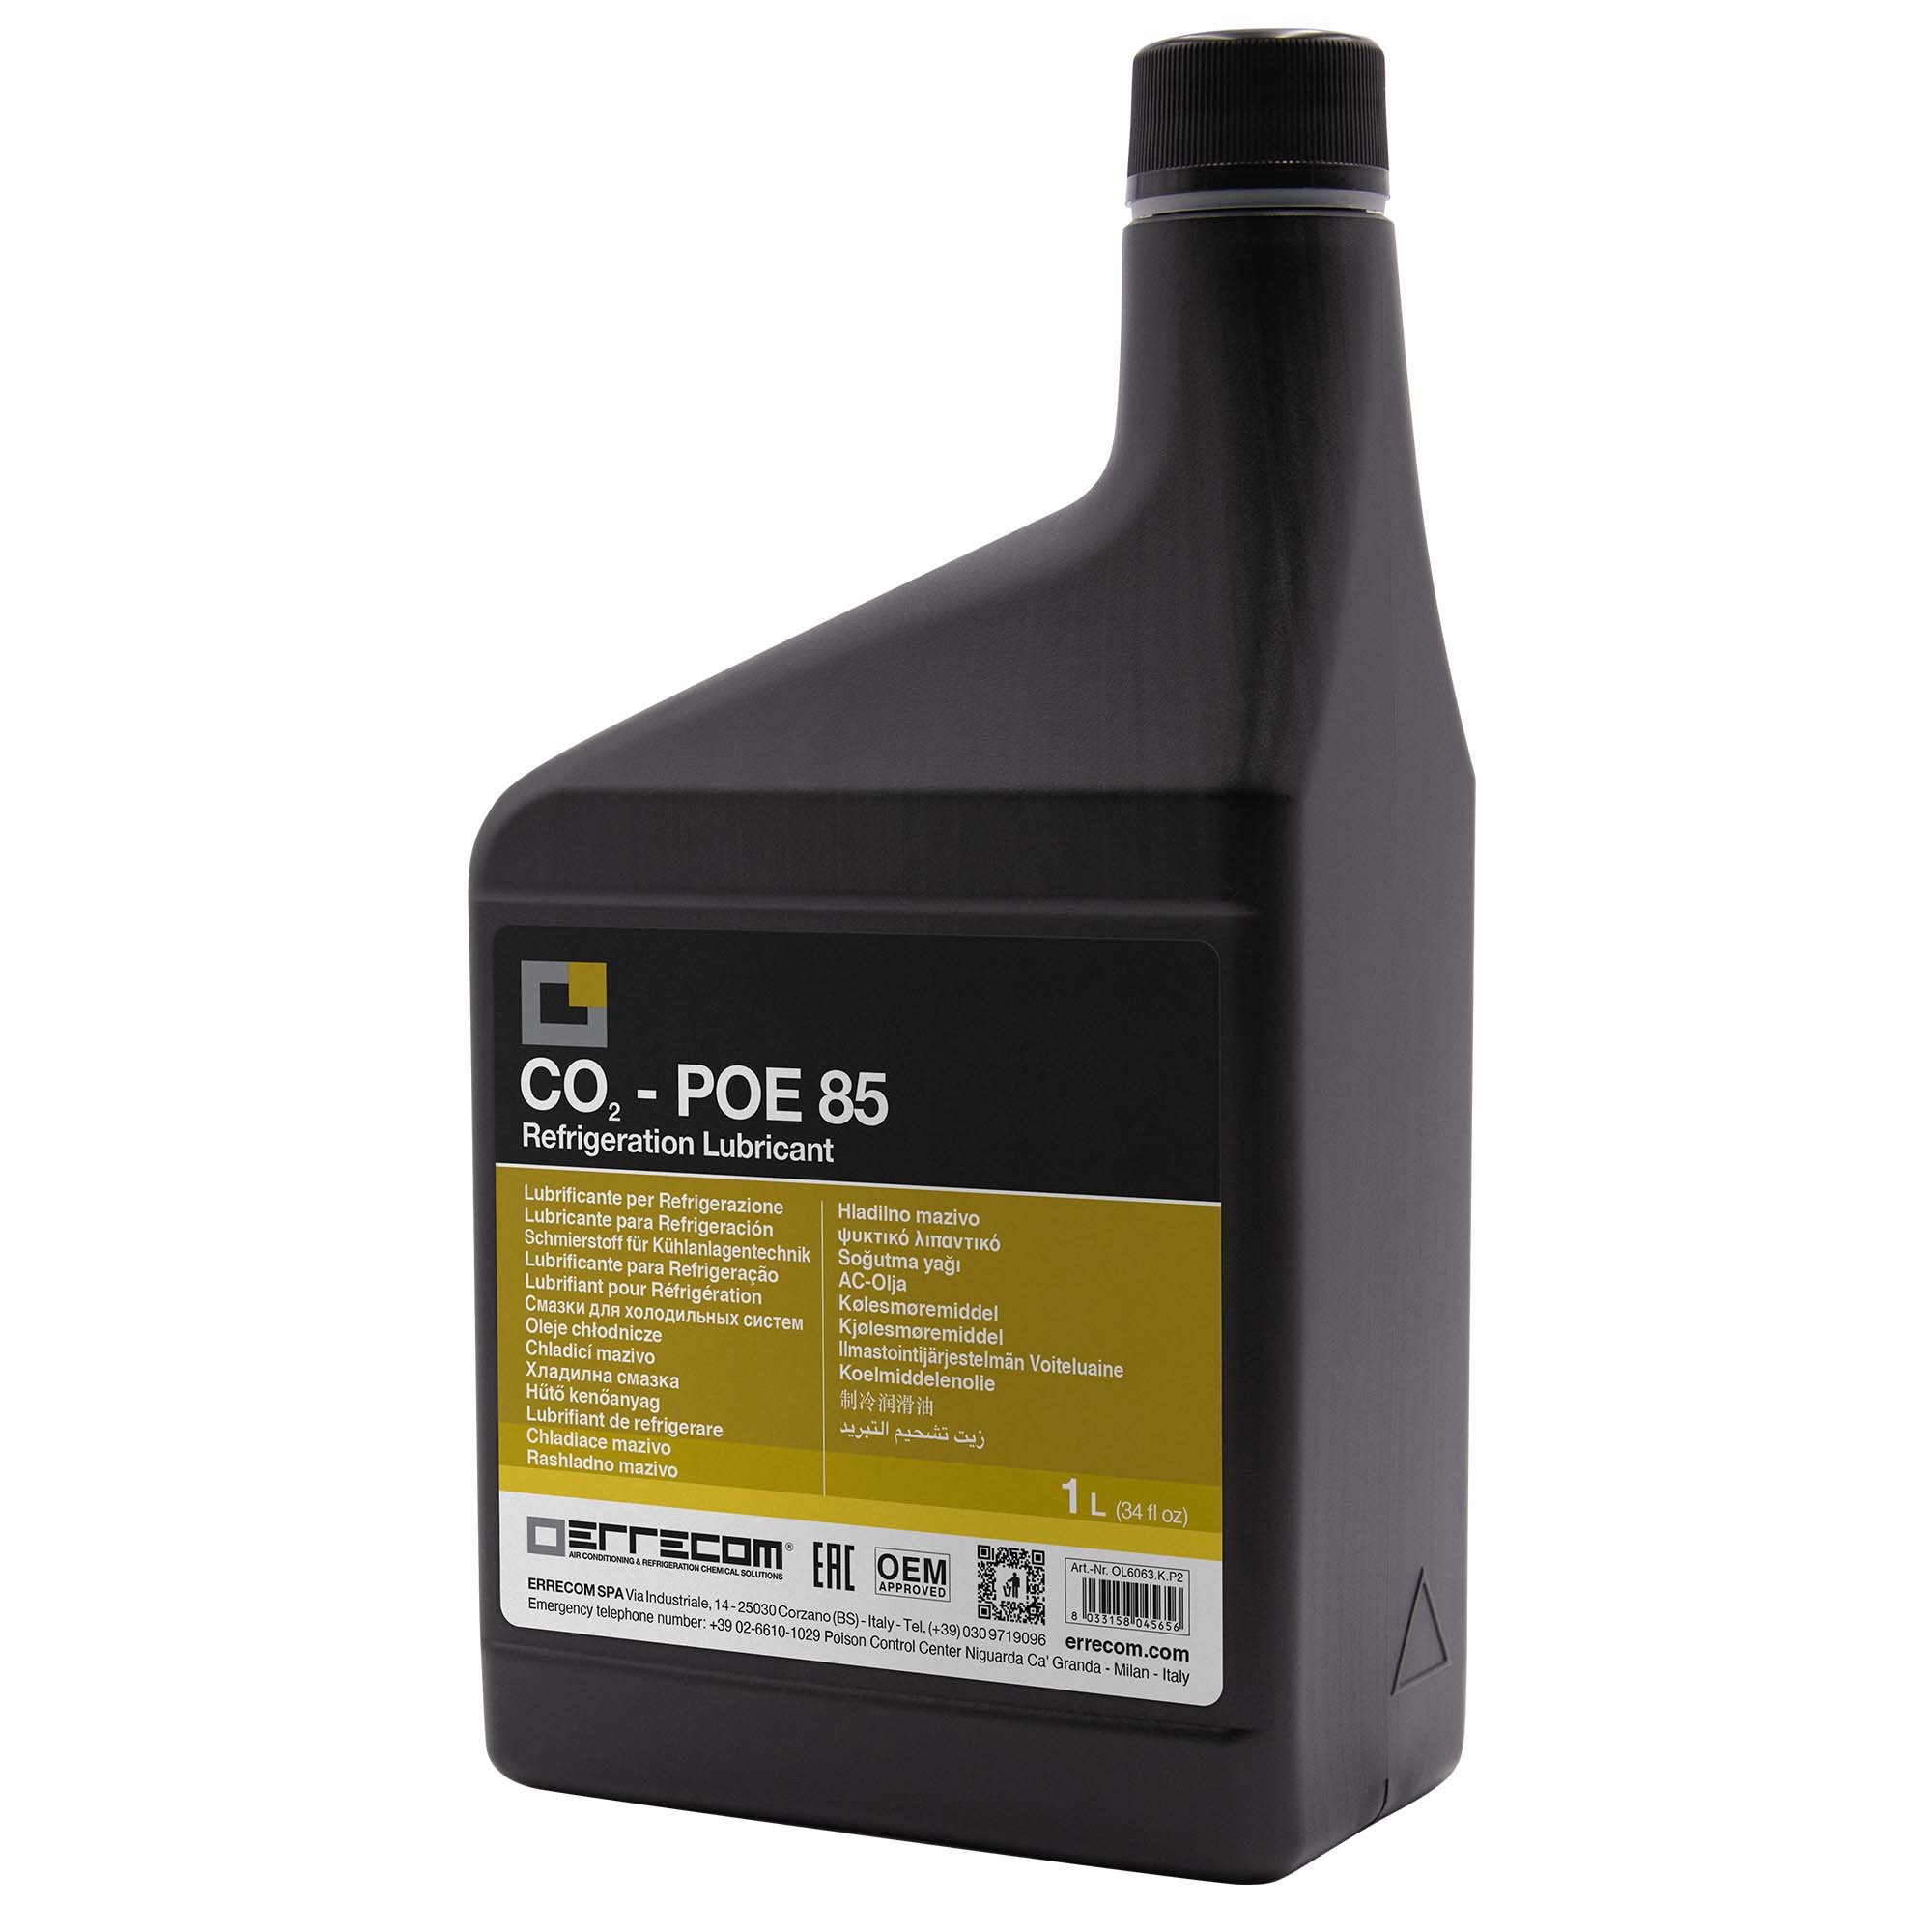 12 x Olio lubrificante Refrigerazione Polyol Estere (POE) specifico per CO2 Errecom 85 - Tanica in Plastica da 1 lt. - Confezione n° 12 pz. (totale 12 litri)